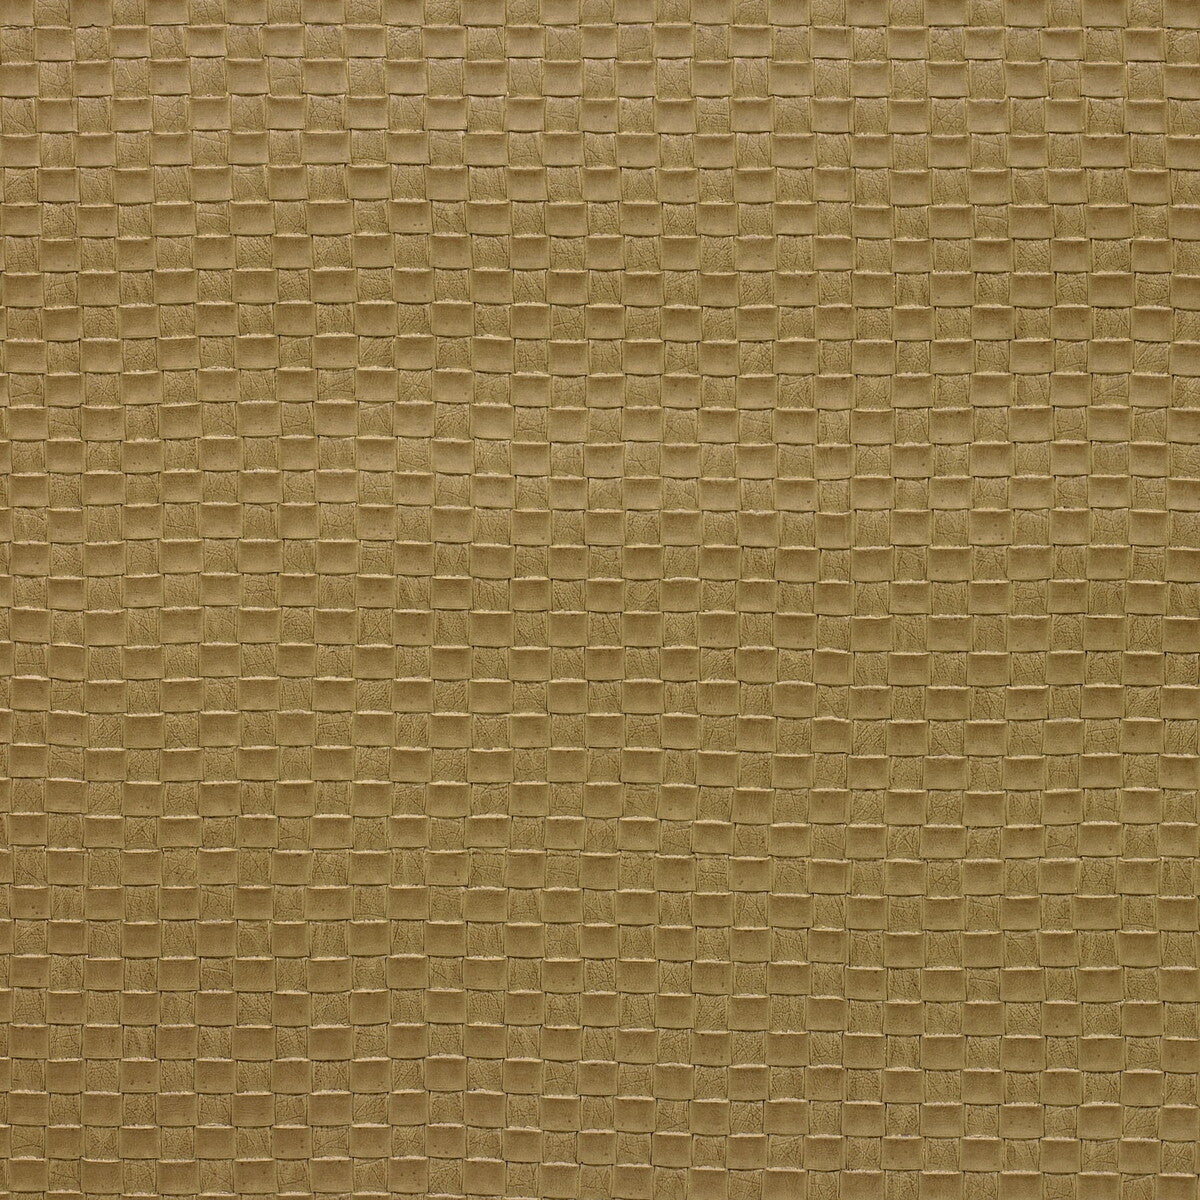 Kravet Design fabric in olia-16 color - pattern OLIA.16.0 - by Kravet Design